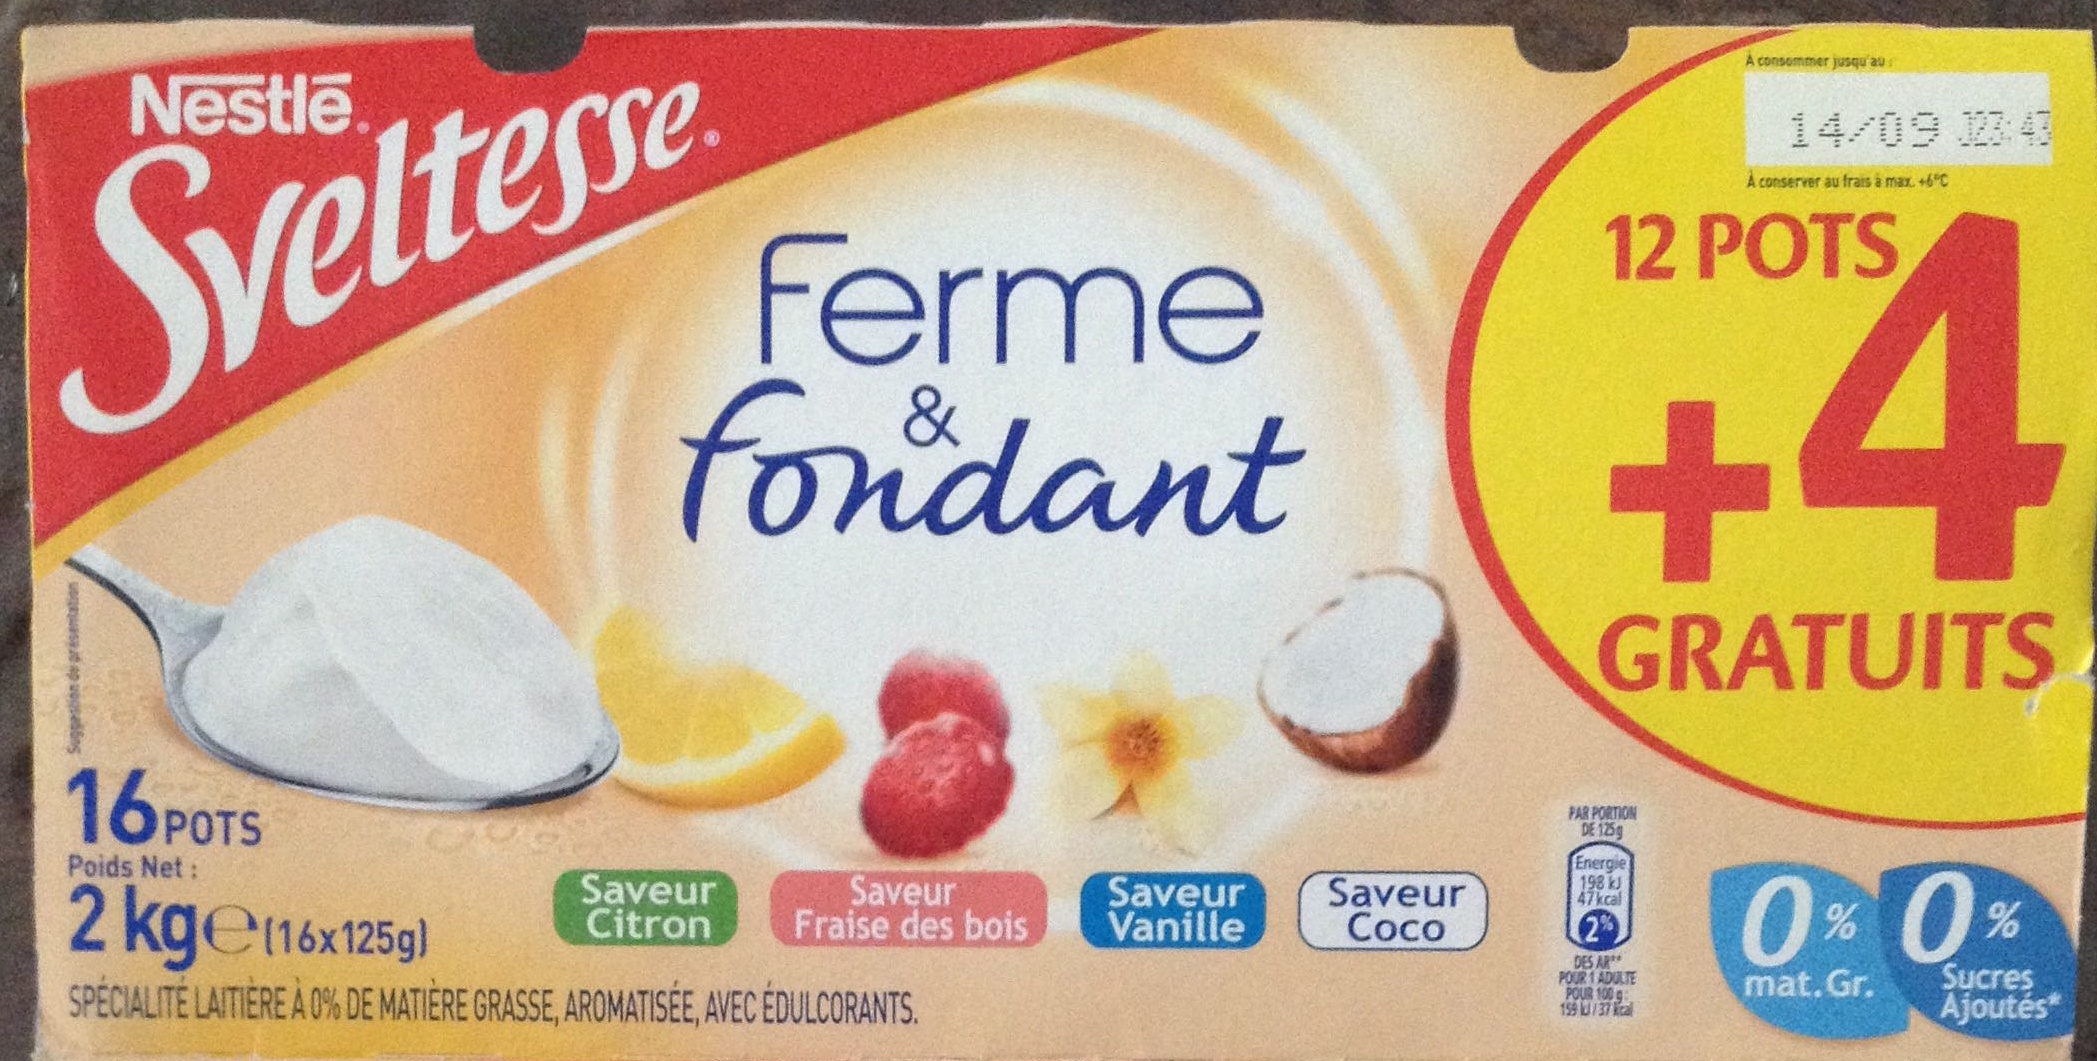 Sveltesse Ferme & Fondant (Citron - Fraise des bois - Vanille - Coco) - Produit